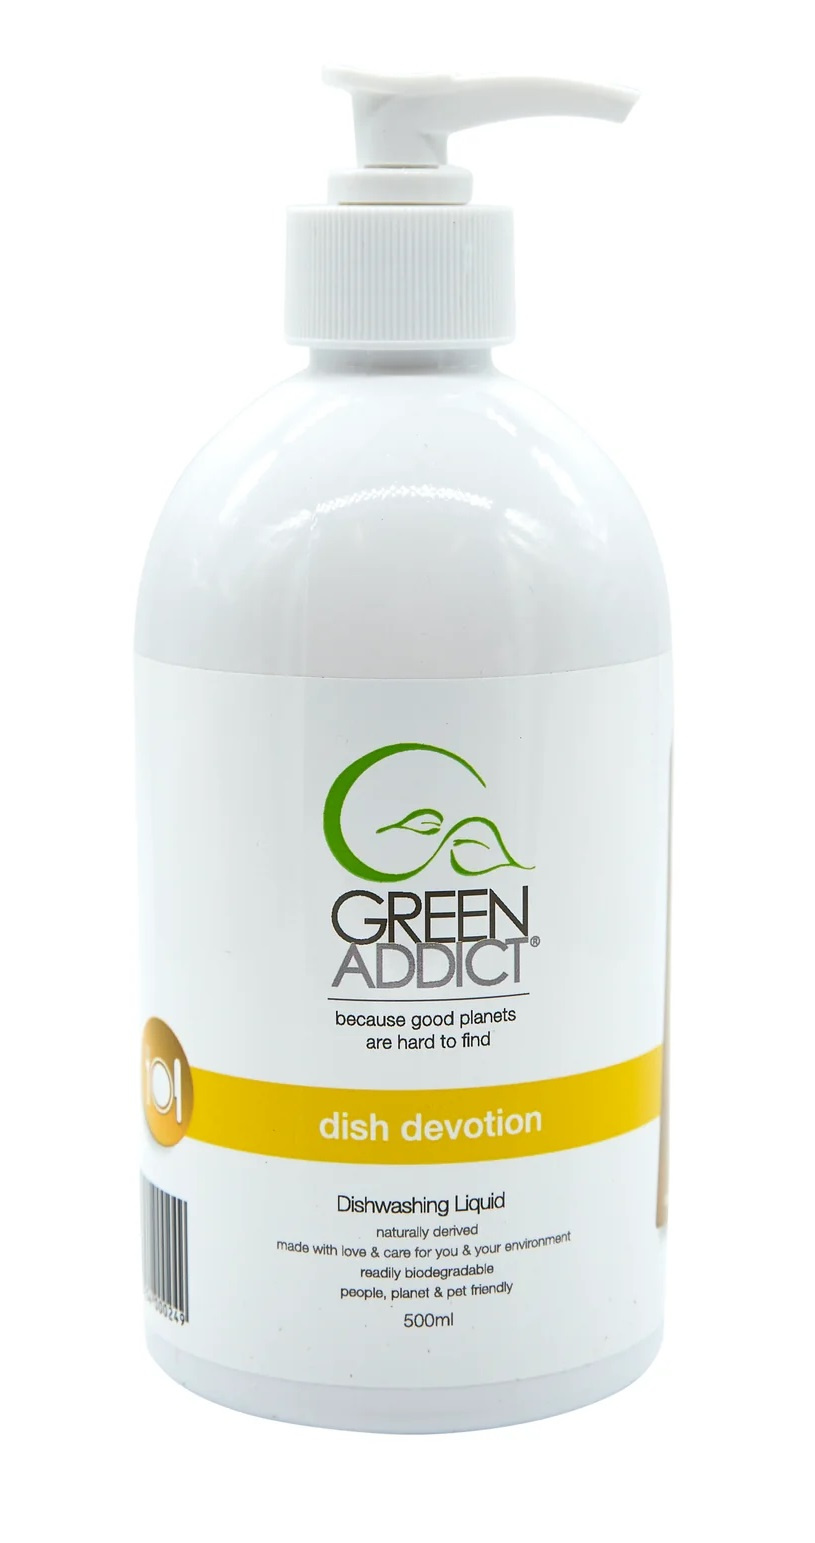 Green Addict Dish Devotion Dishwashing Liquid 500ml